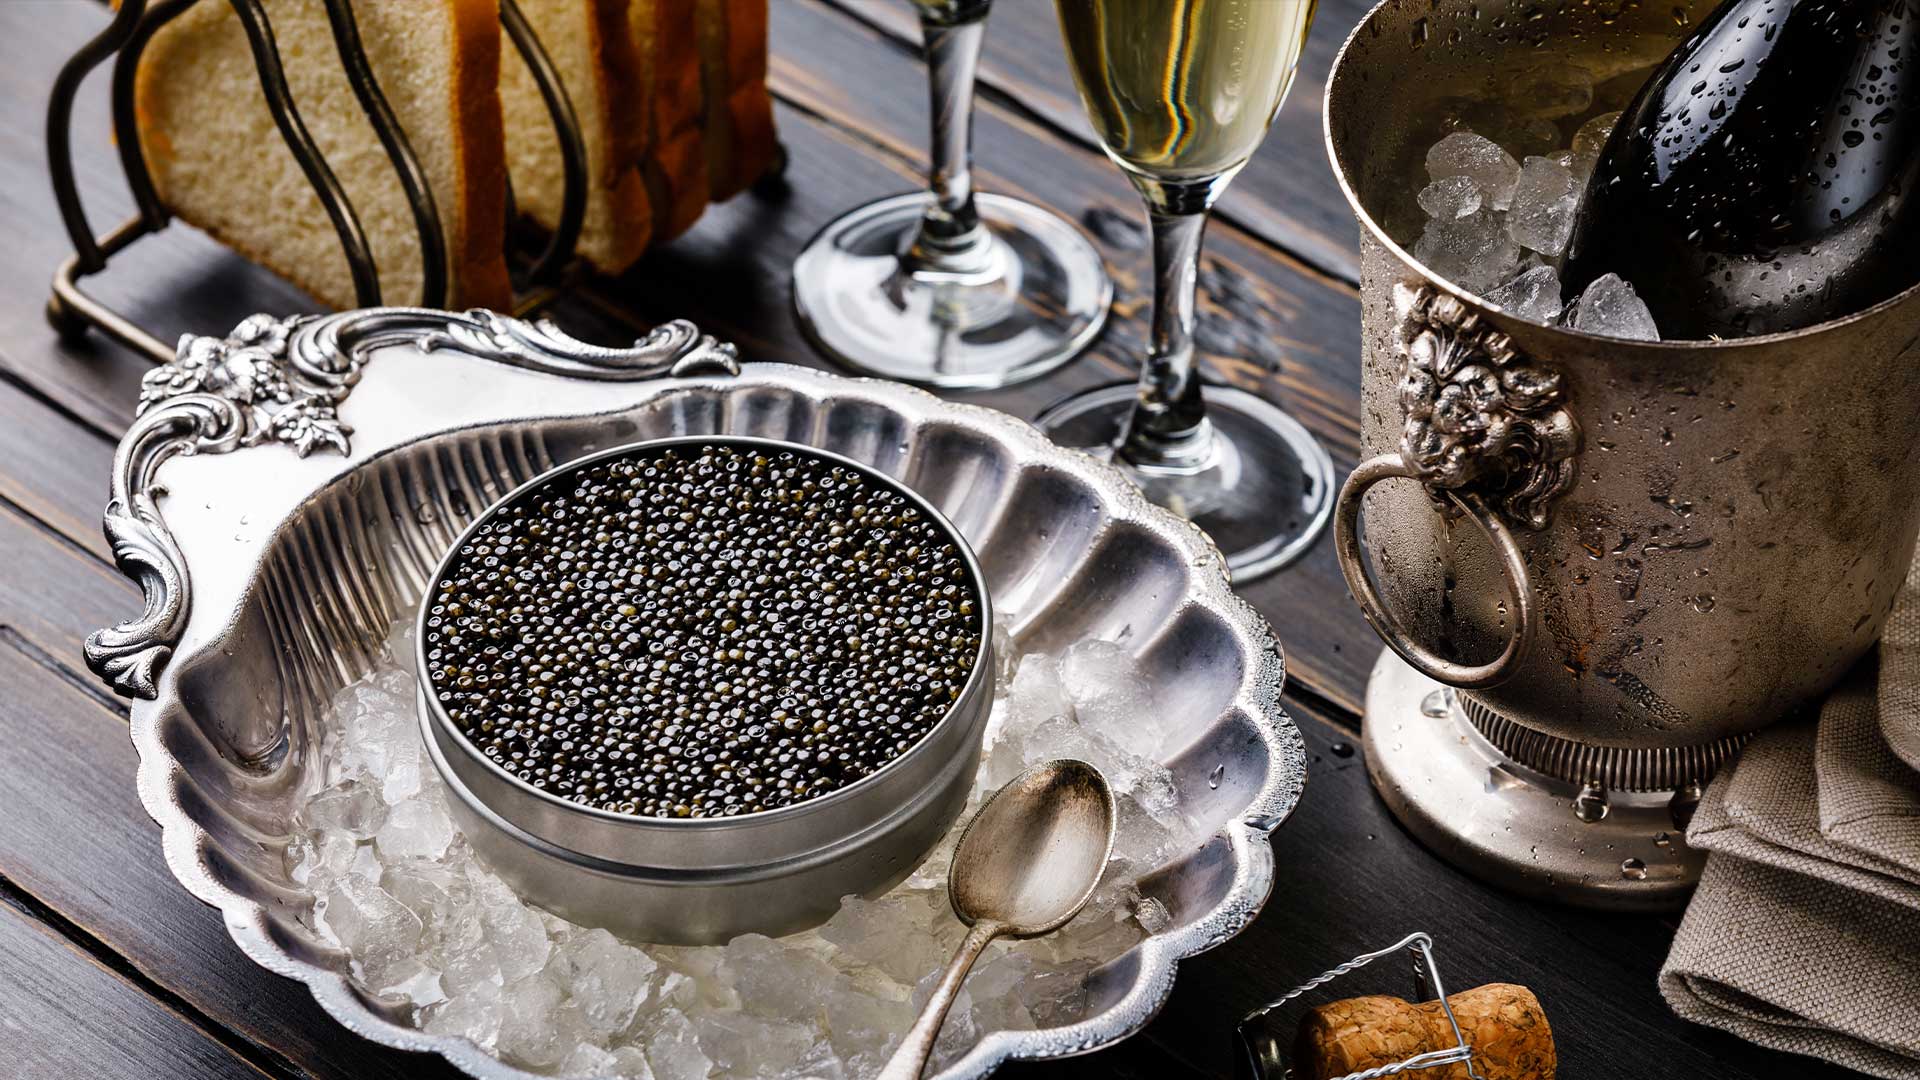 Eggsclusive : It’s our Caviar Trivia